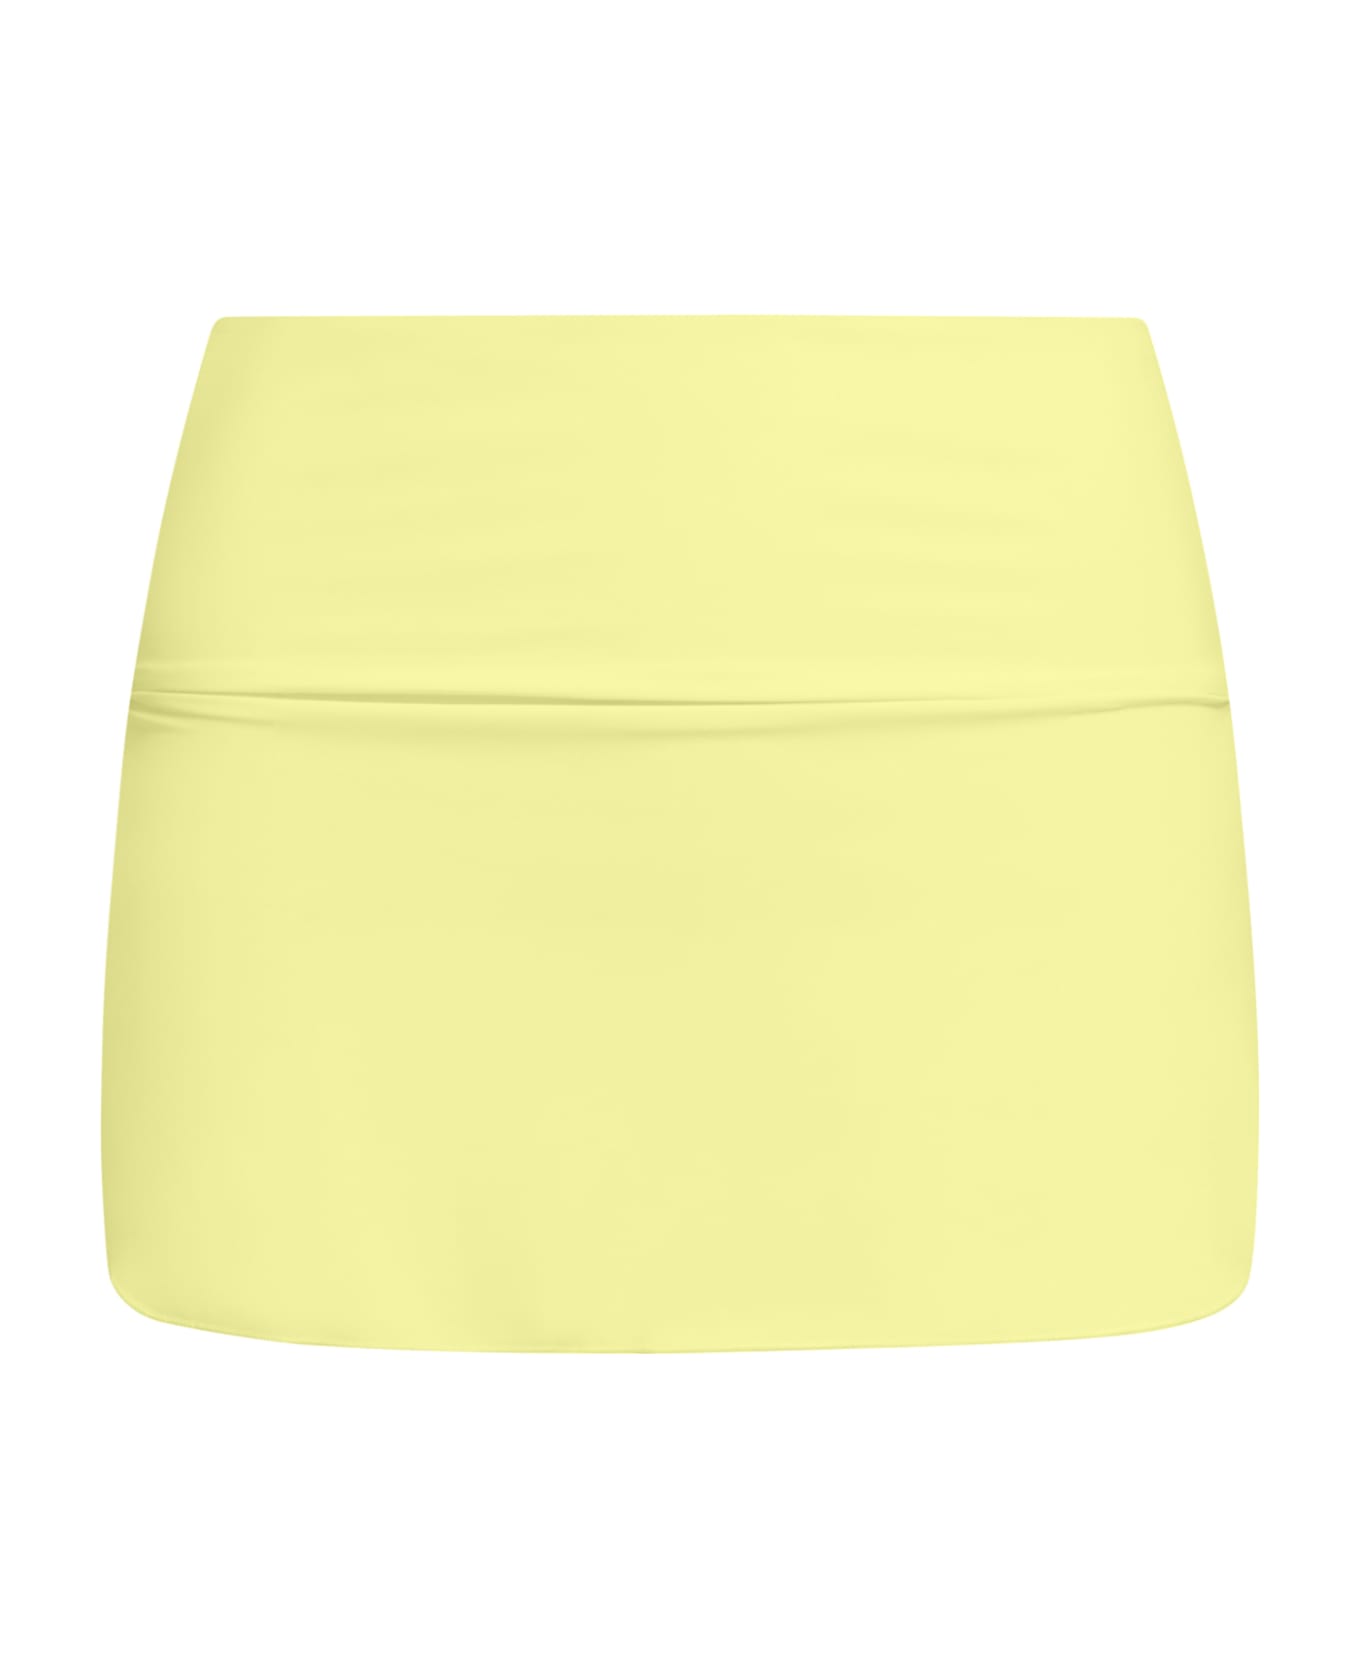 Sucrette Pareo Skirt - Giallo